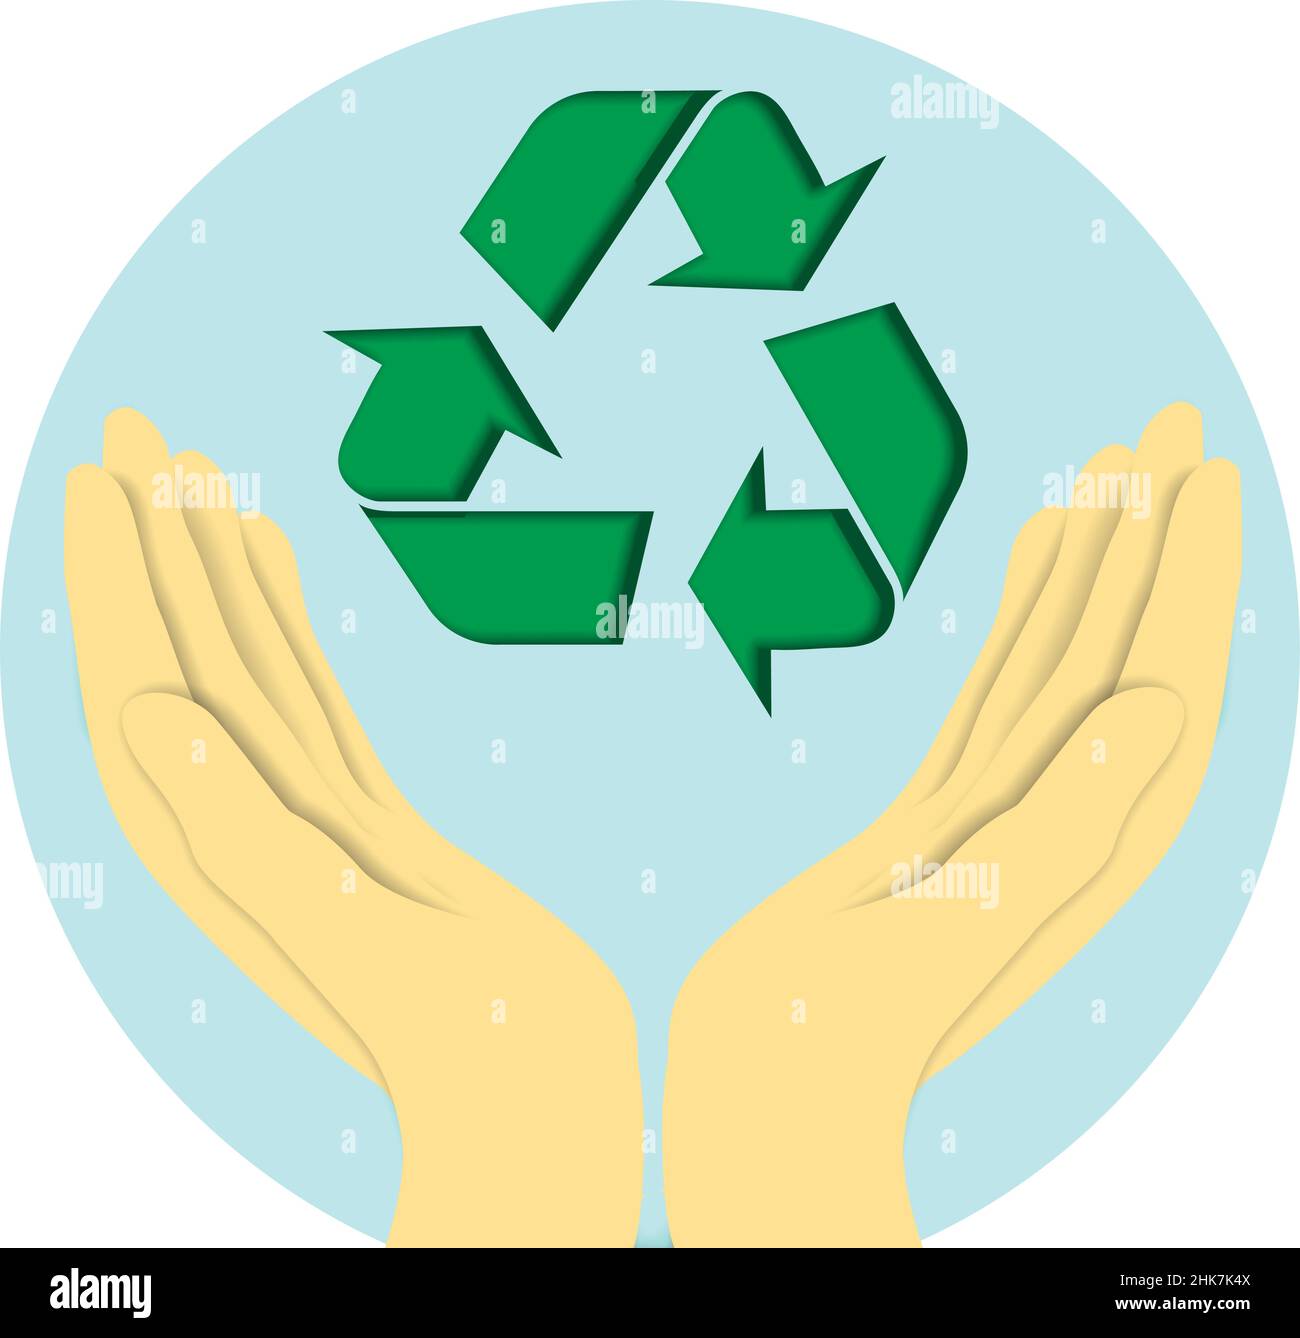 Dessin d'une main ouverte tenant le symbole des flèches de recyclage.Sensibilisation au recyclage et prise en charge de notre planète Illustration de Vecteur